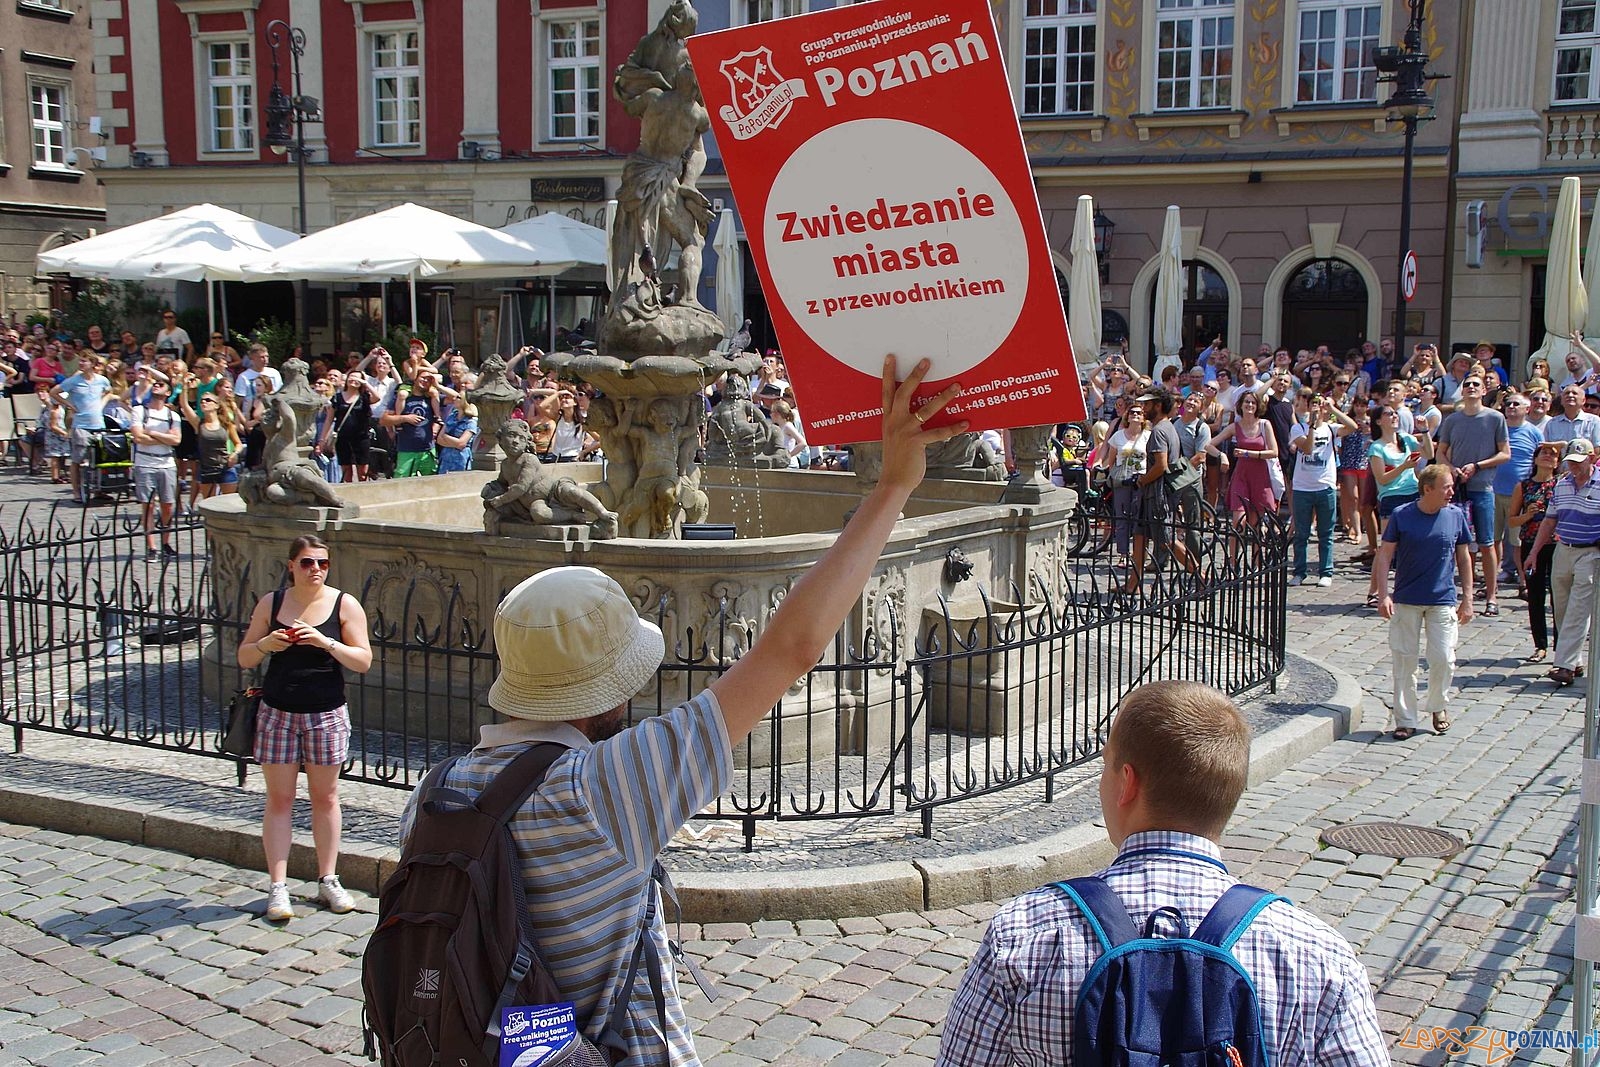 Przewdnicy - przechadzki po Poznaniu  Foto: PoPoznaniu.pl / materiały informacyjne